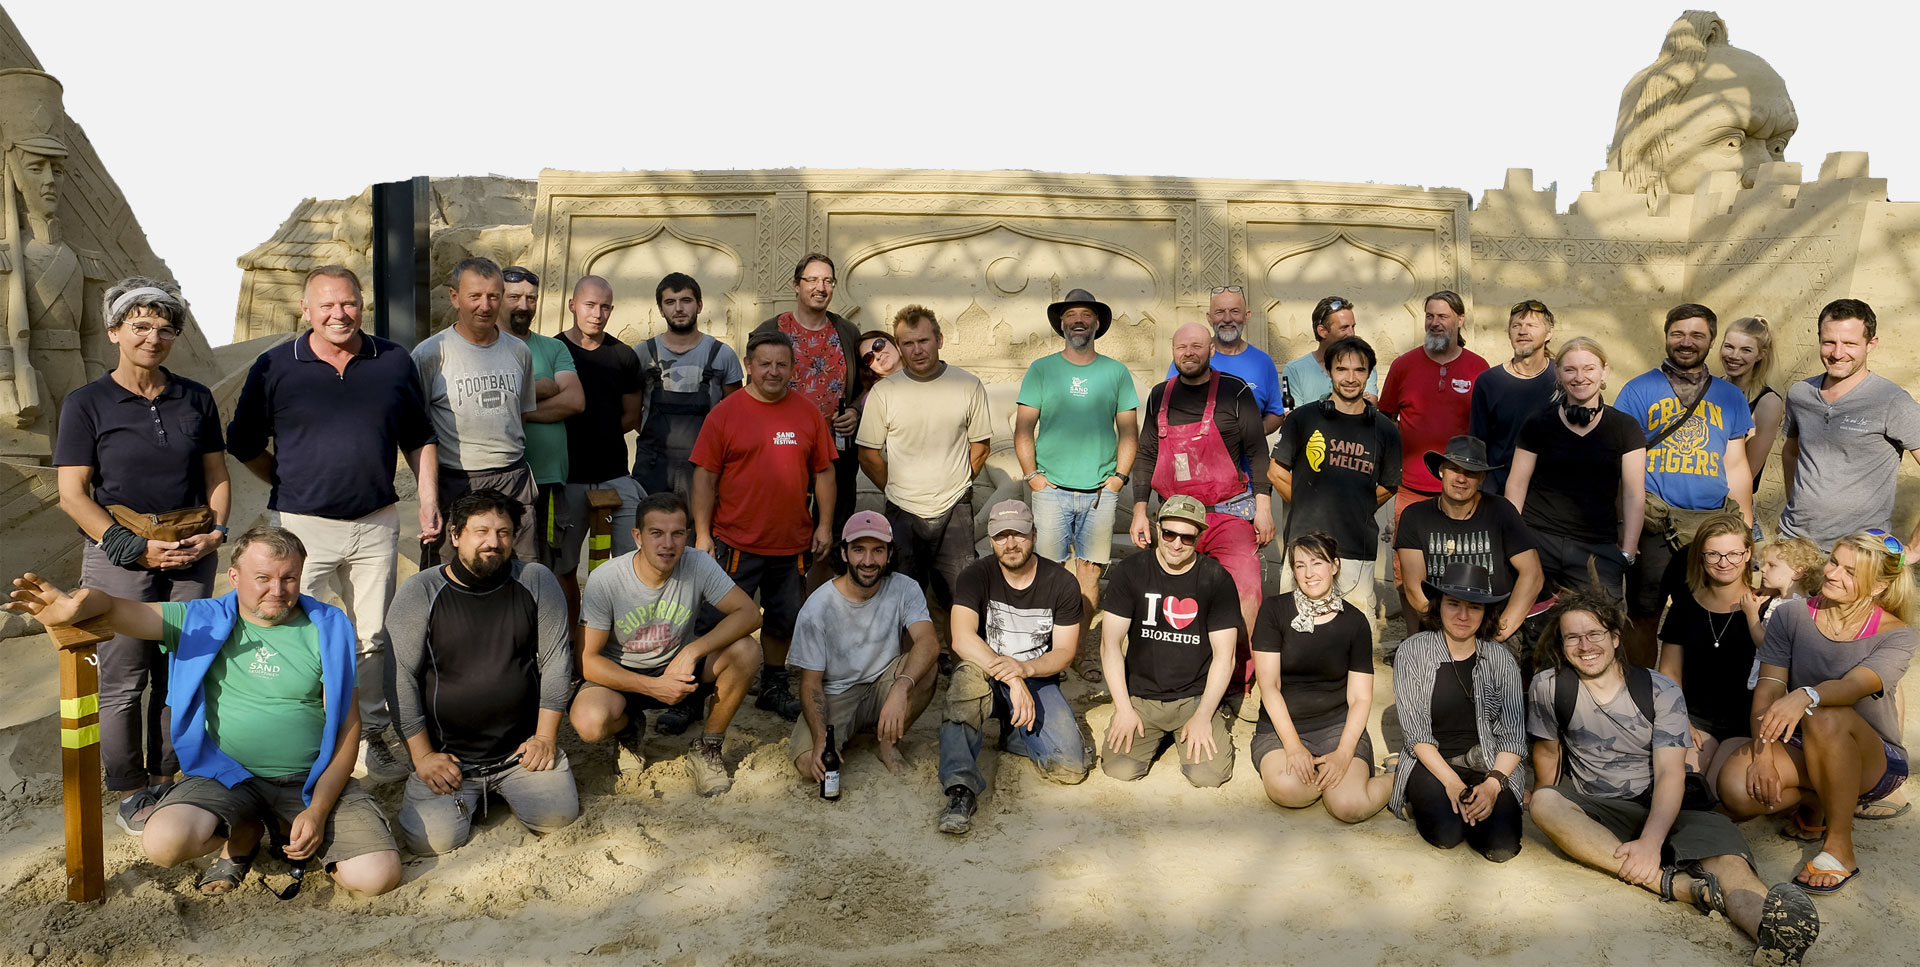 Team der Sandskulpturen Ausstellung Prora / OT Ostseebad Binz auf der Insel Rügen